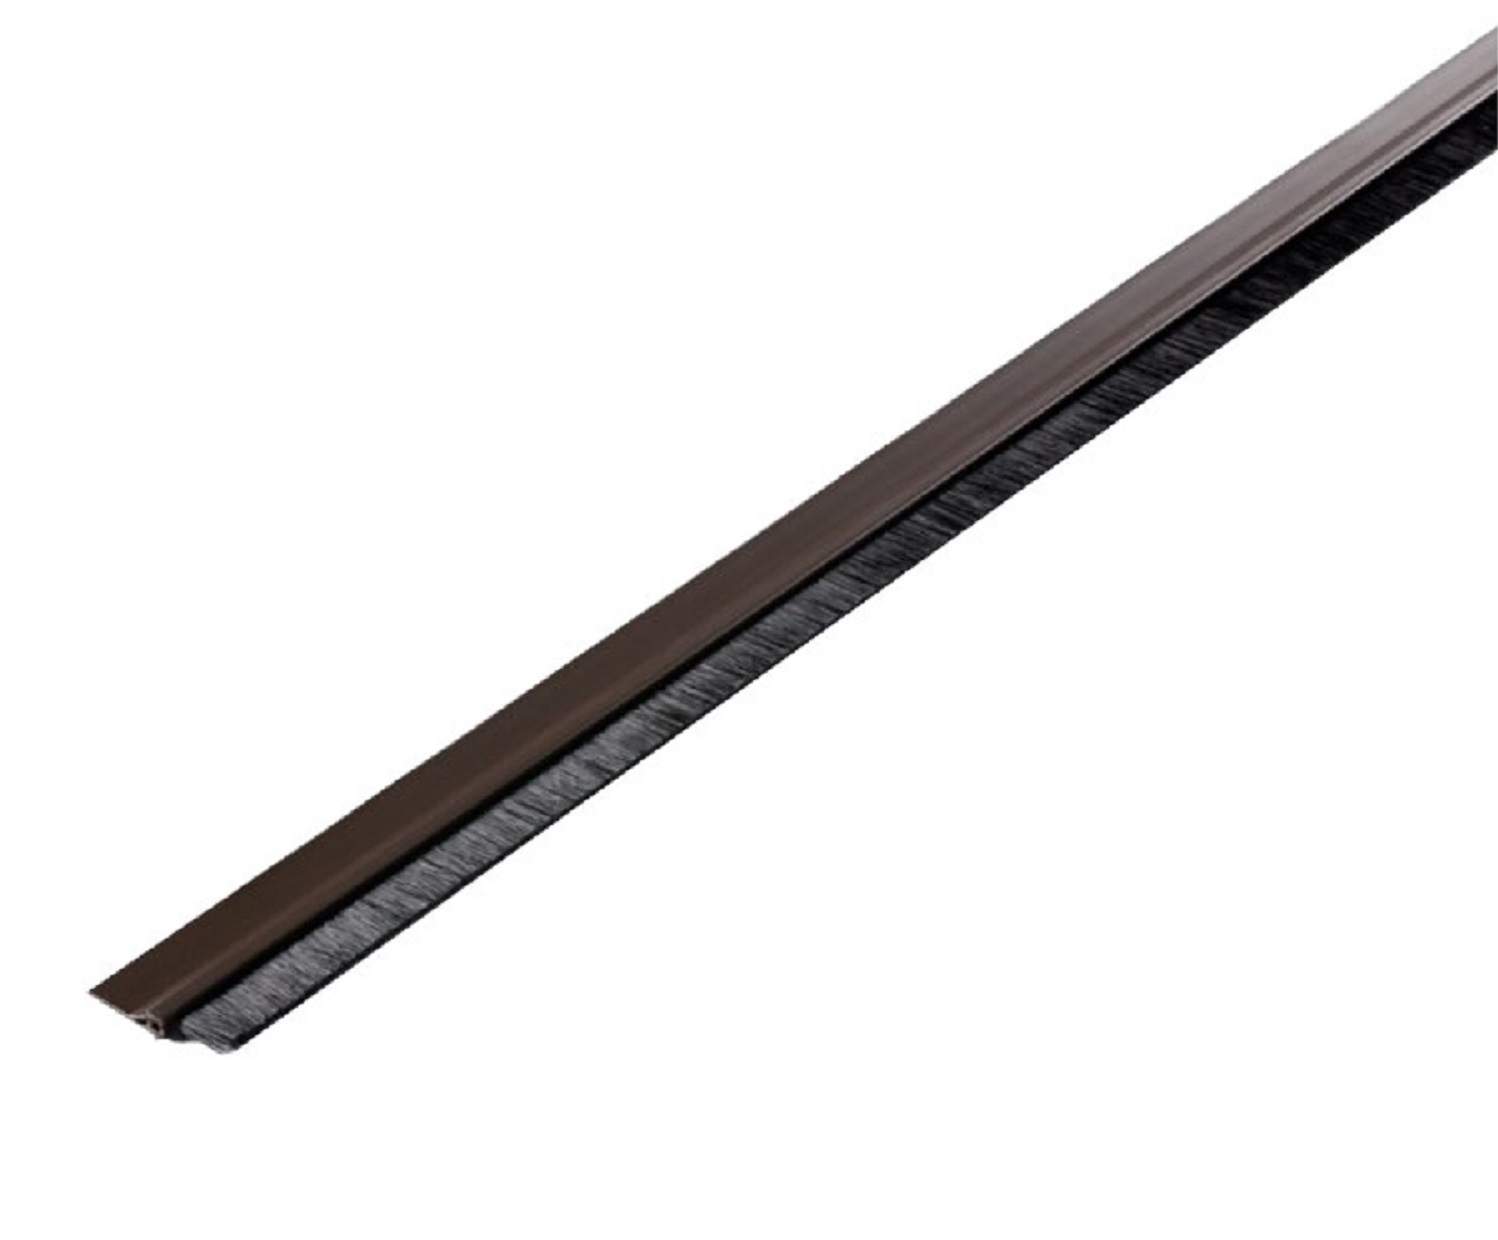 Umbral de puerta adhesivo marrón de PVC rígido con cepillo suave, 100 cm